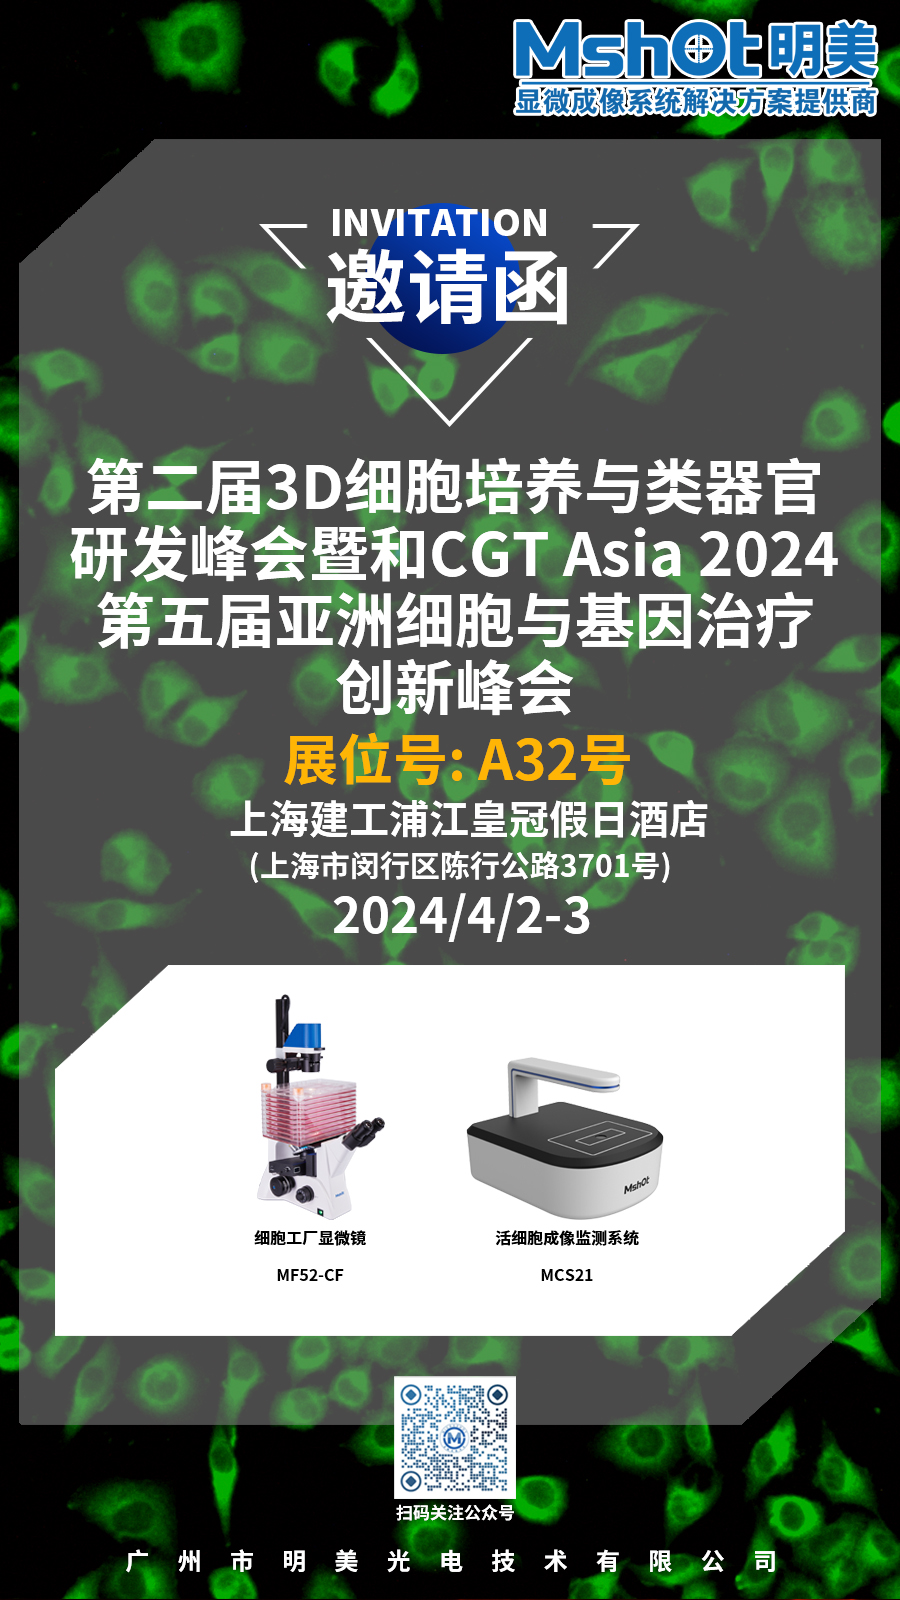 展会邀请|明美与您相约上海第二届3D细胞培养与类器官研发峰会和CGT Asia 2024第五届亚洲细胞与基因治疗创新峰会